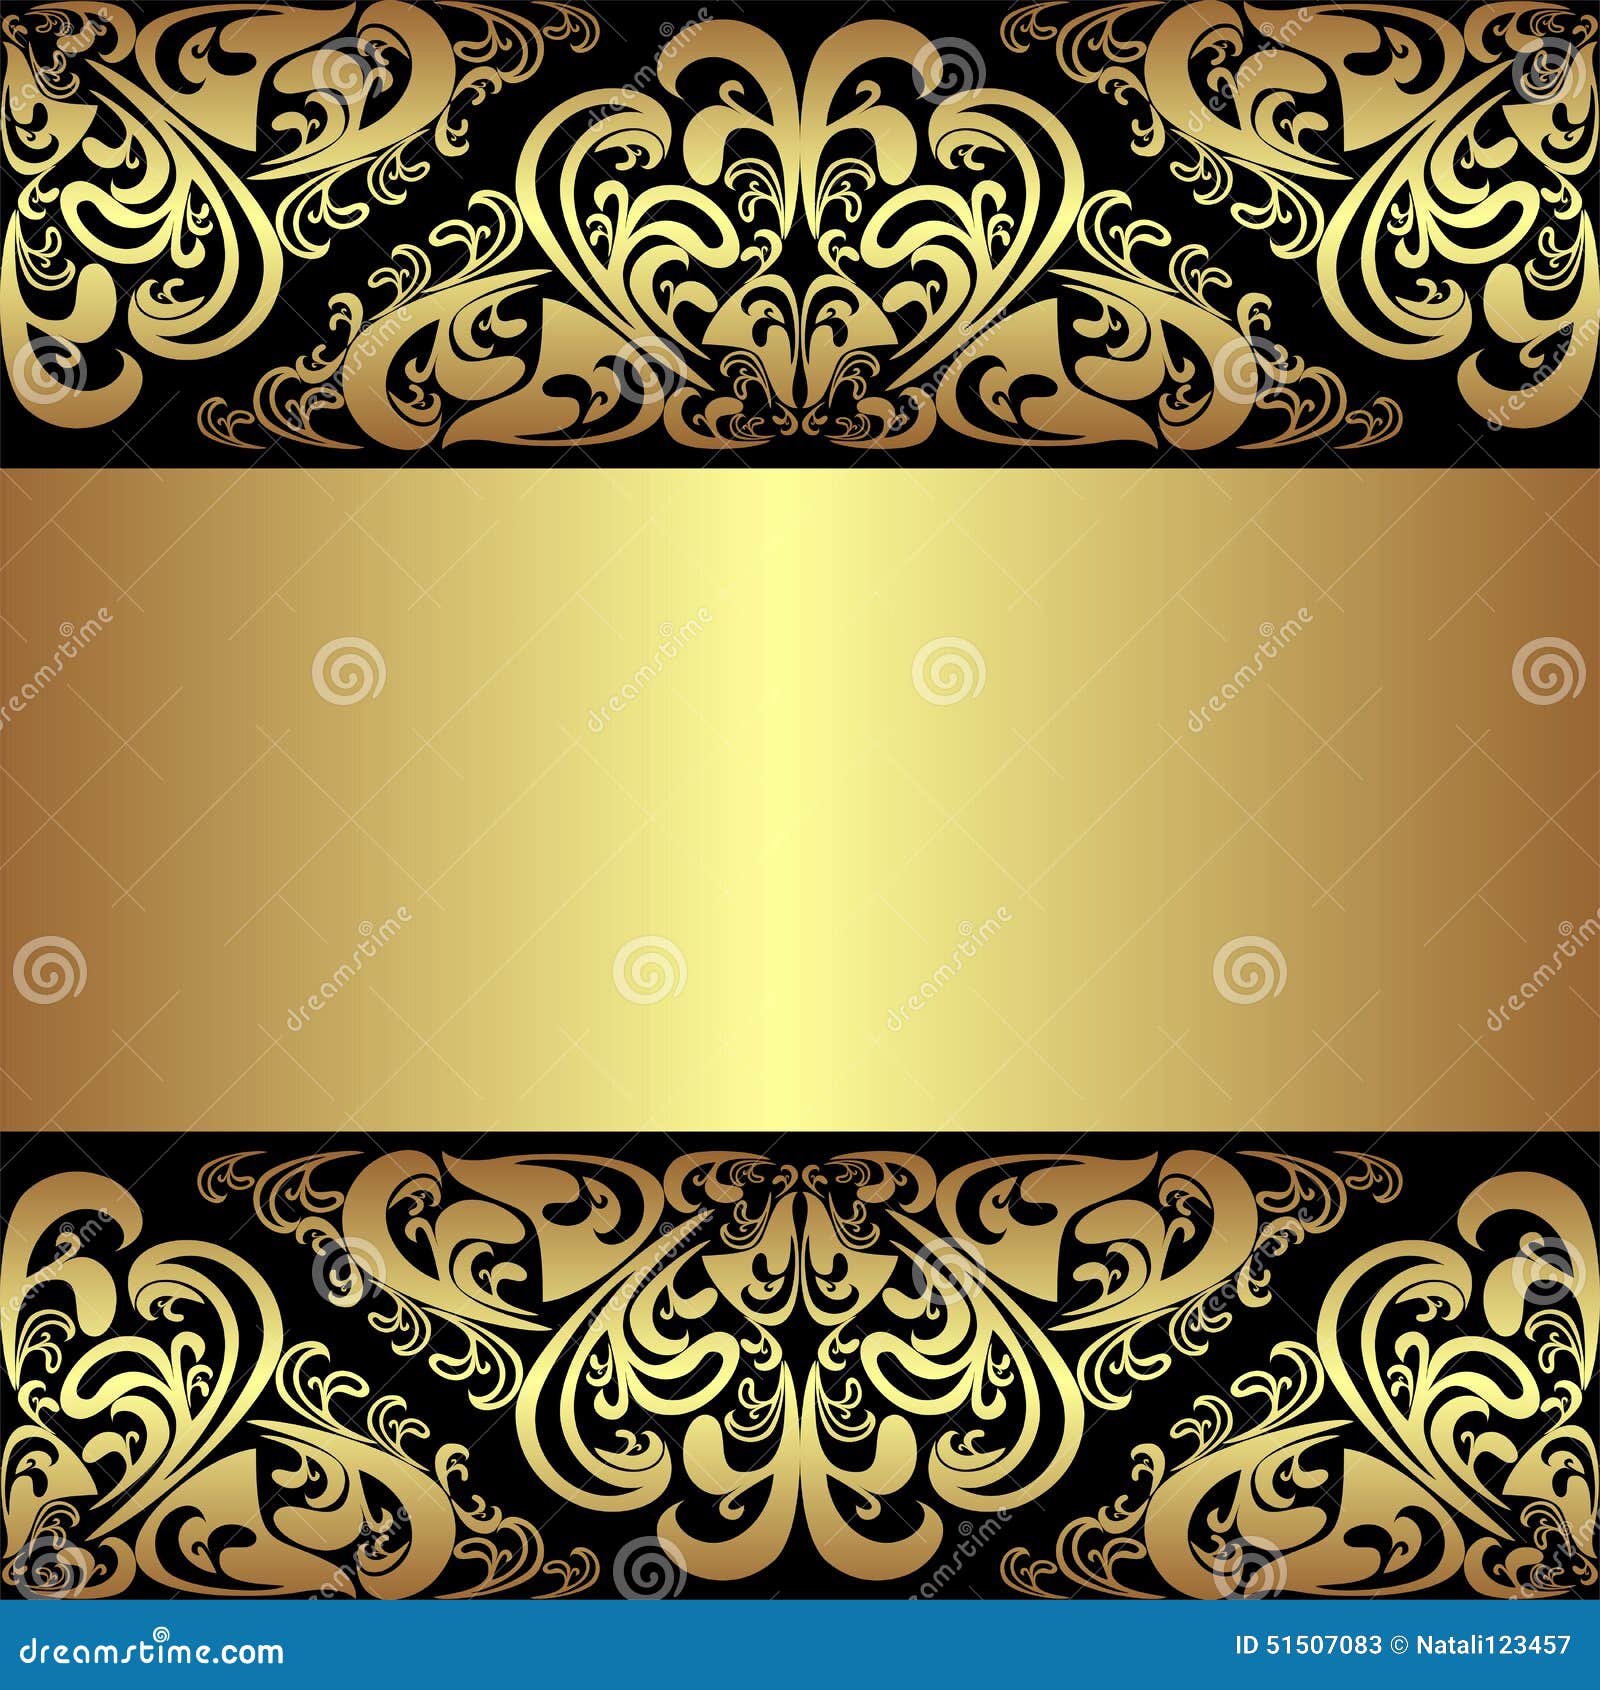 Hình nền đen vàng sang trọng với đường viền hoàng gia sẽ làm cho màn hình của bạn trở nên đẳng cấp hơn bao giờ hết. Thiết kế này mang đến cảm giác chuyên nghiệp và rất sang trọng cho slide của bạn. Hãy cùng khám phá và trải nghiệm những hình nền này ngay hôm nay.